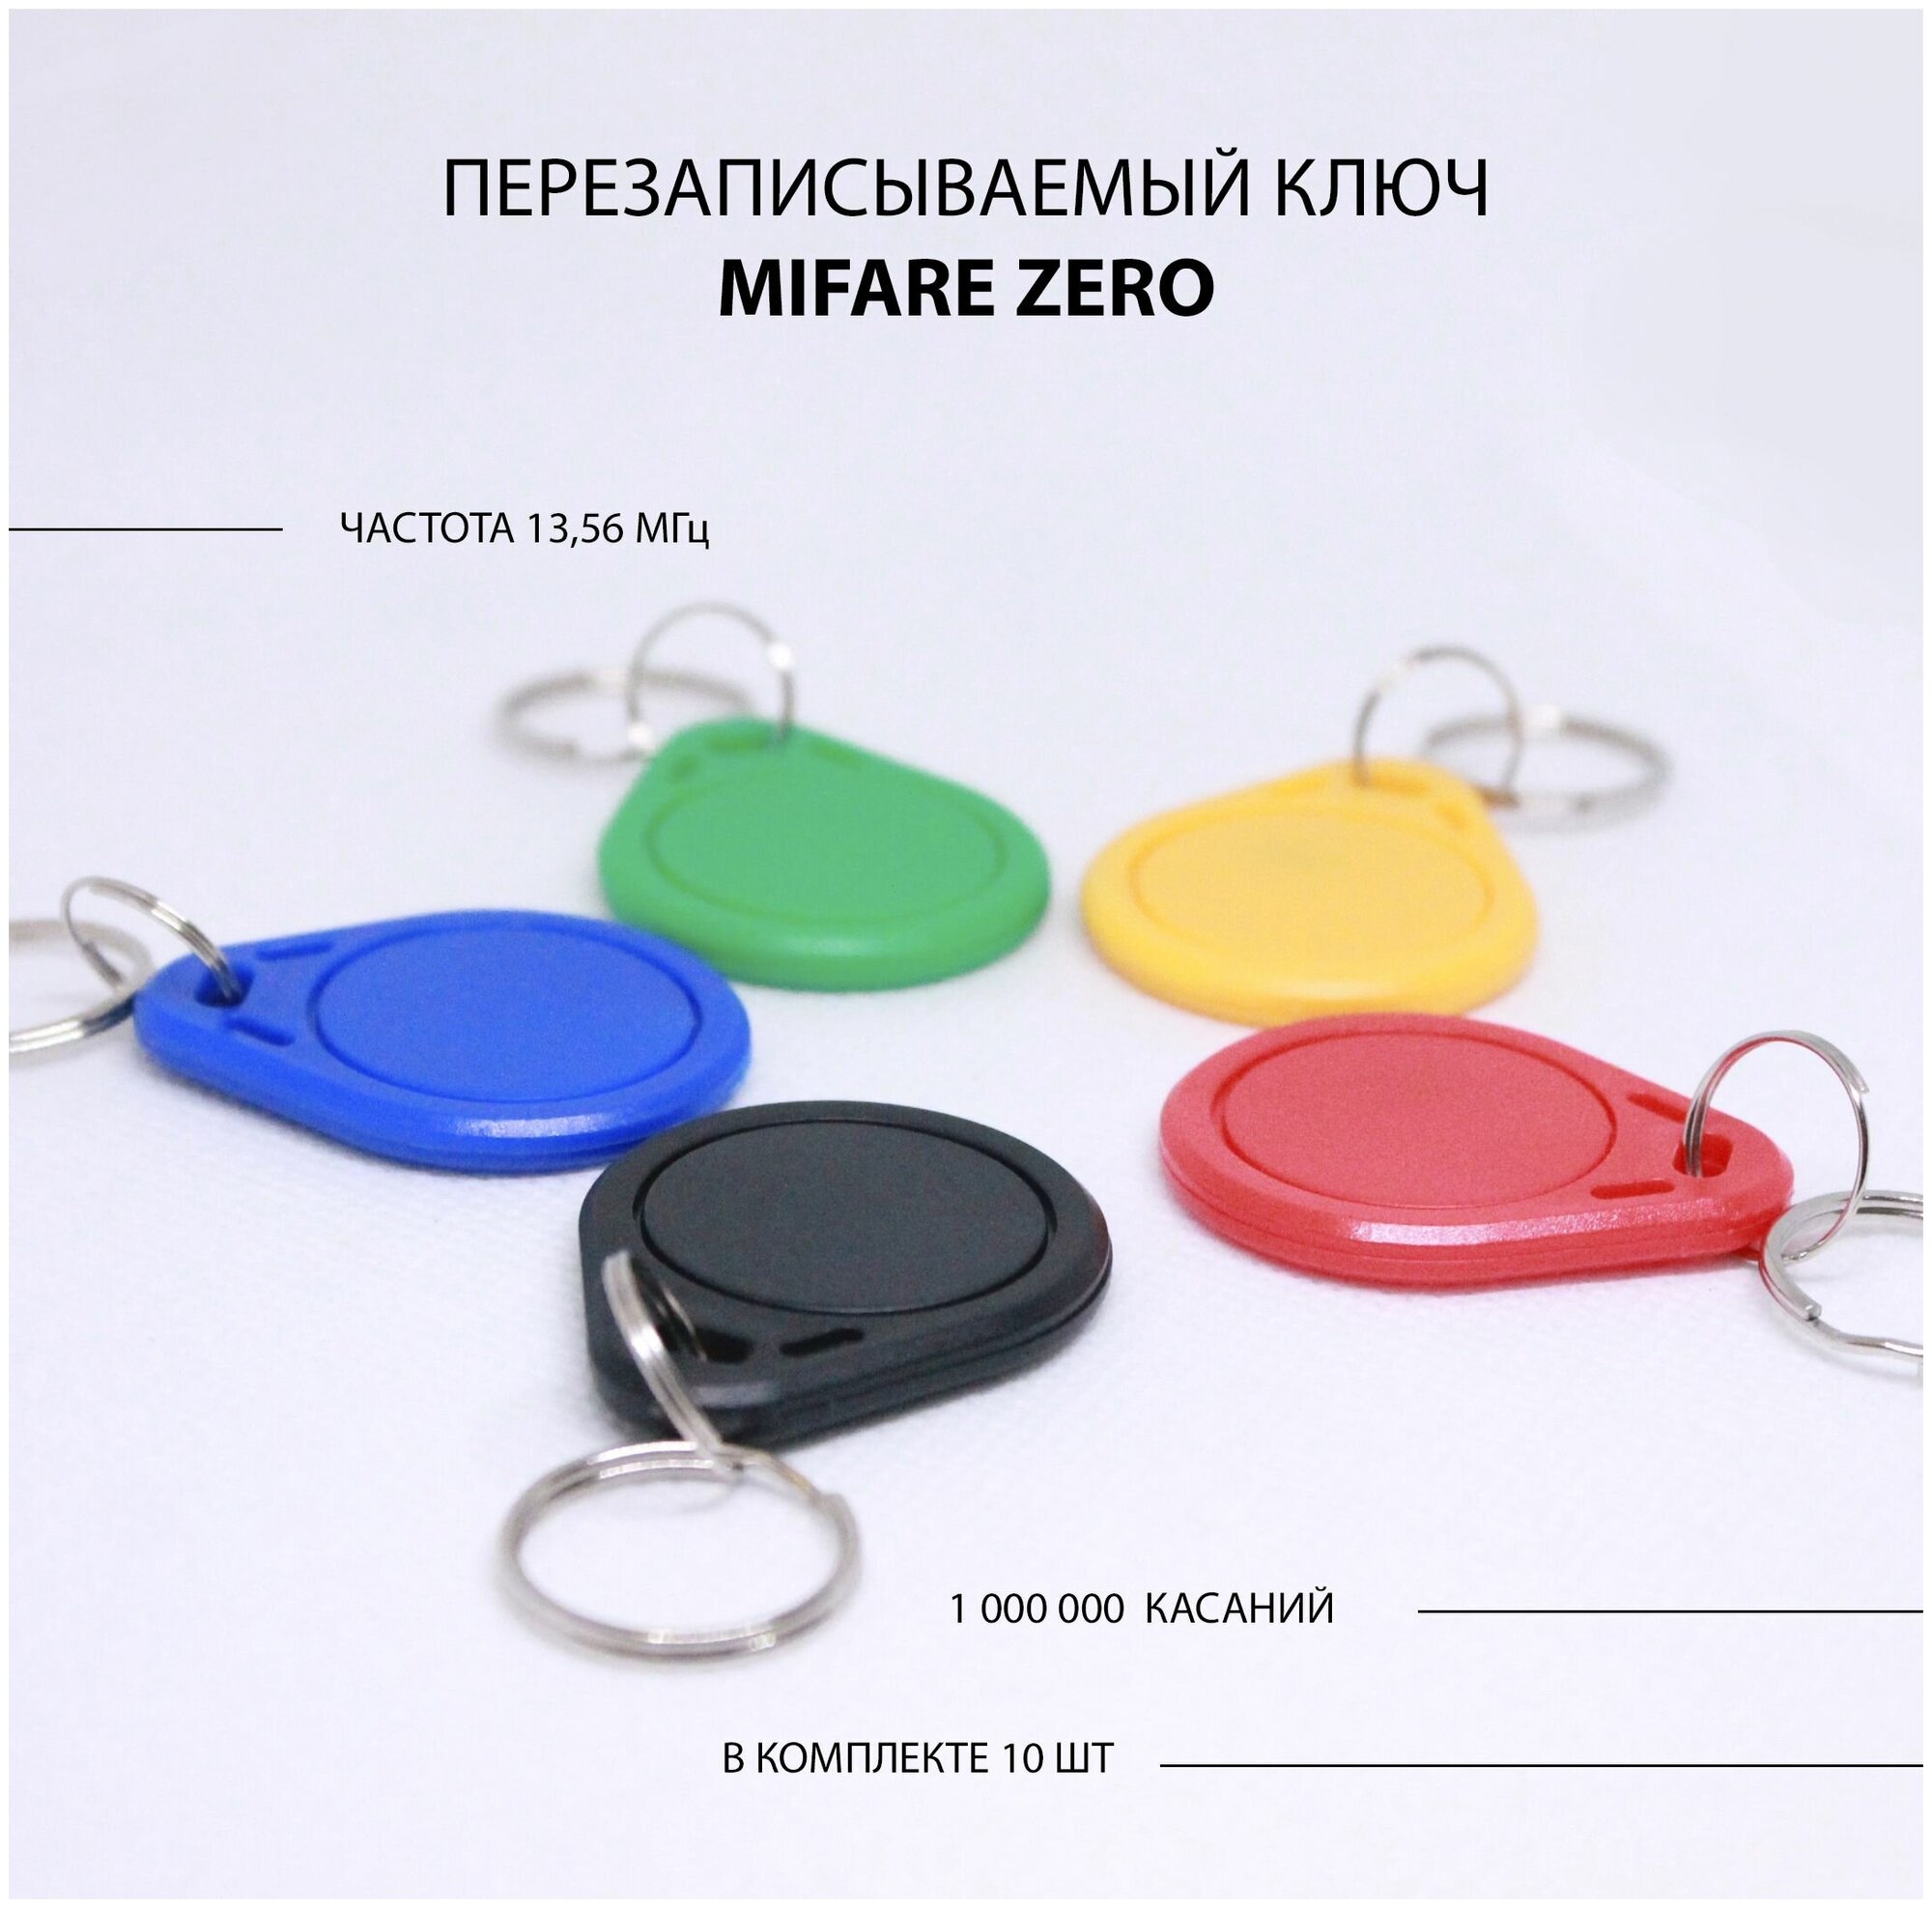 Ключ для домофона Mifare Zero 10шт перезаписываемый . Частота 13,56 МГц Разноцветный микс